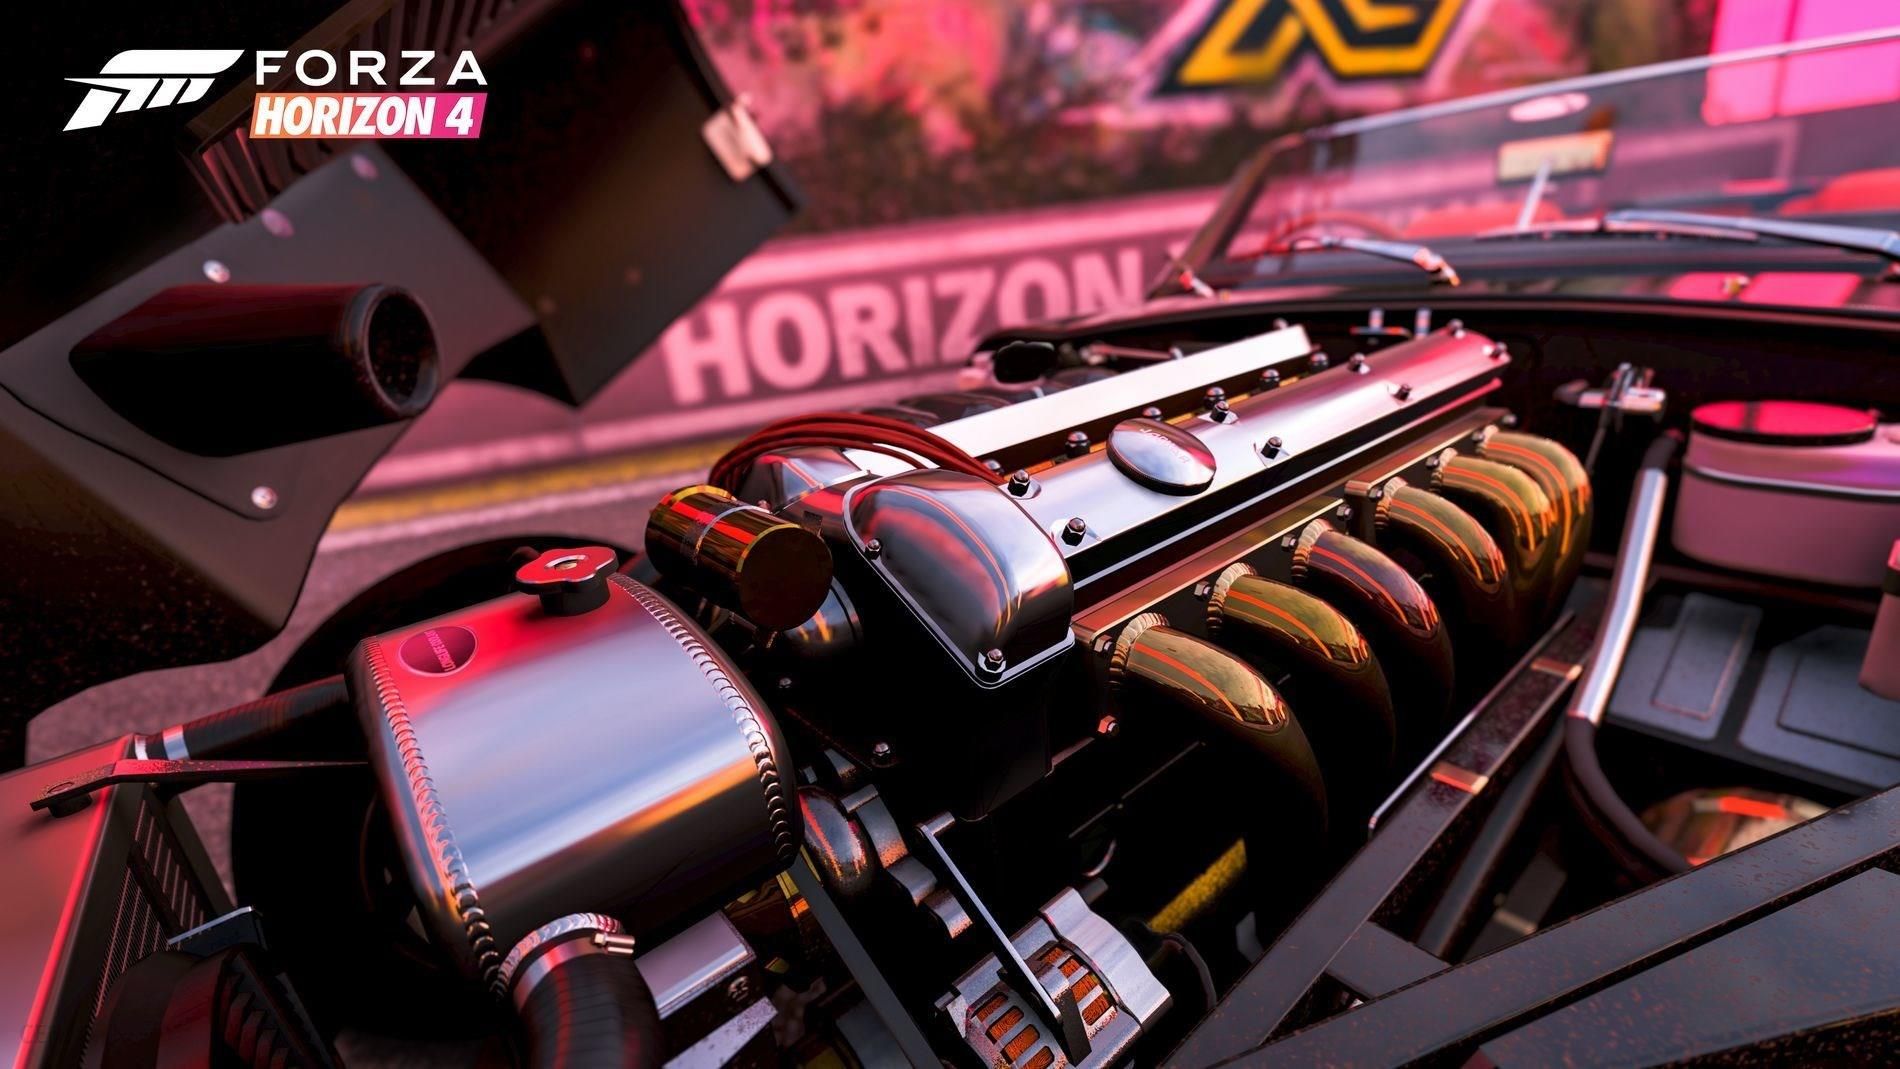 Forza Horizon 4 (Gra Xbox One)